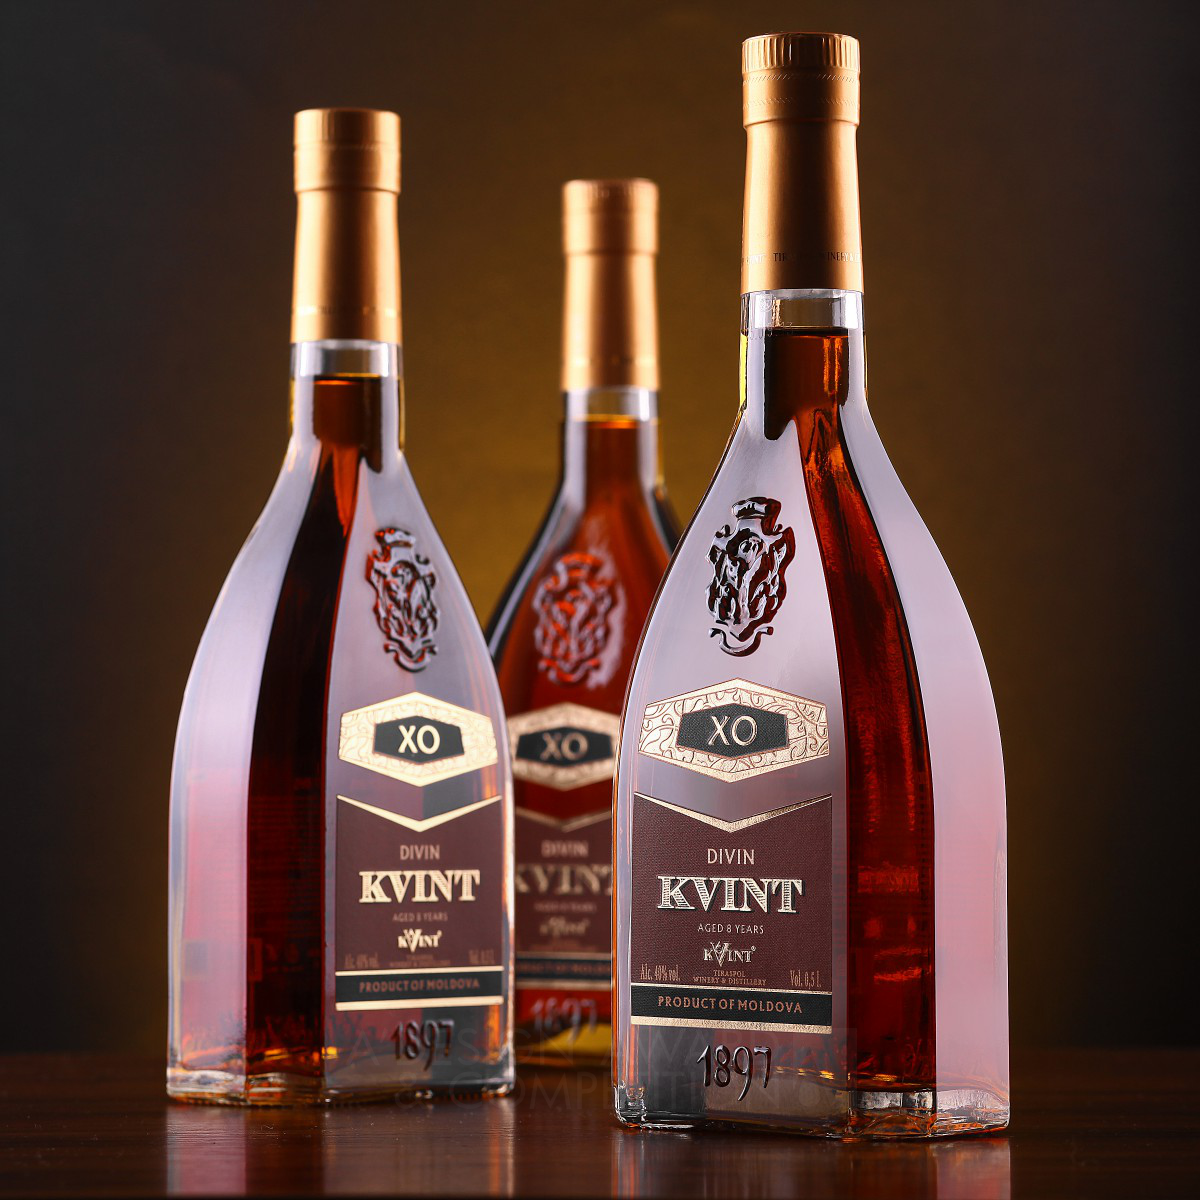 Kvint Series of Moldovan brandies by Valerii Sumilov Silver Packaging Design Award Winner 2014 